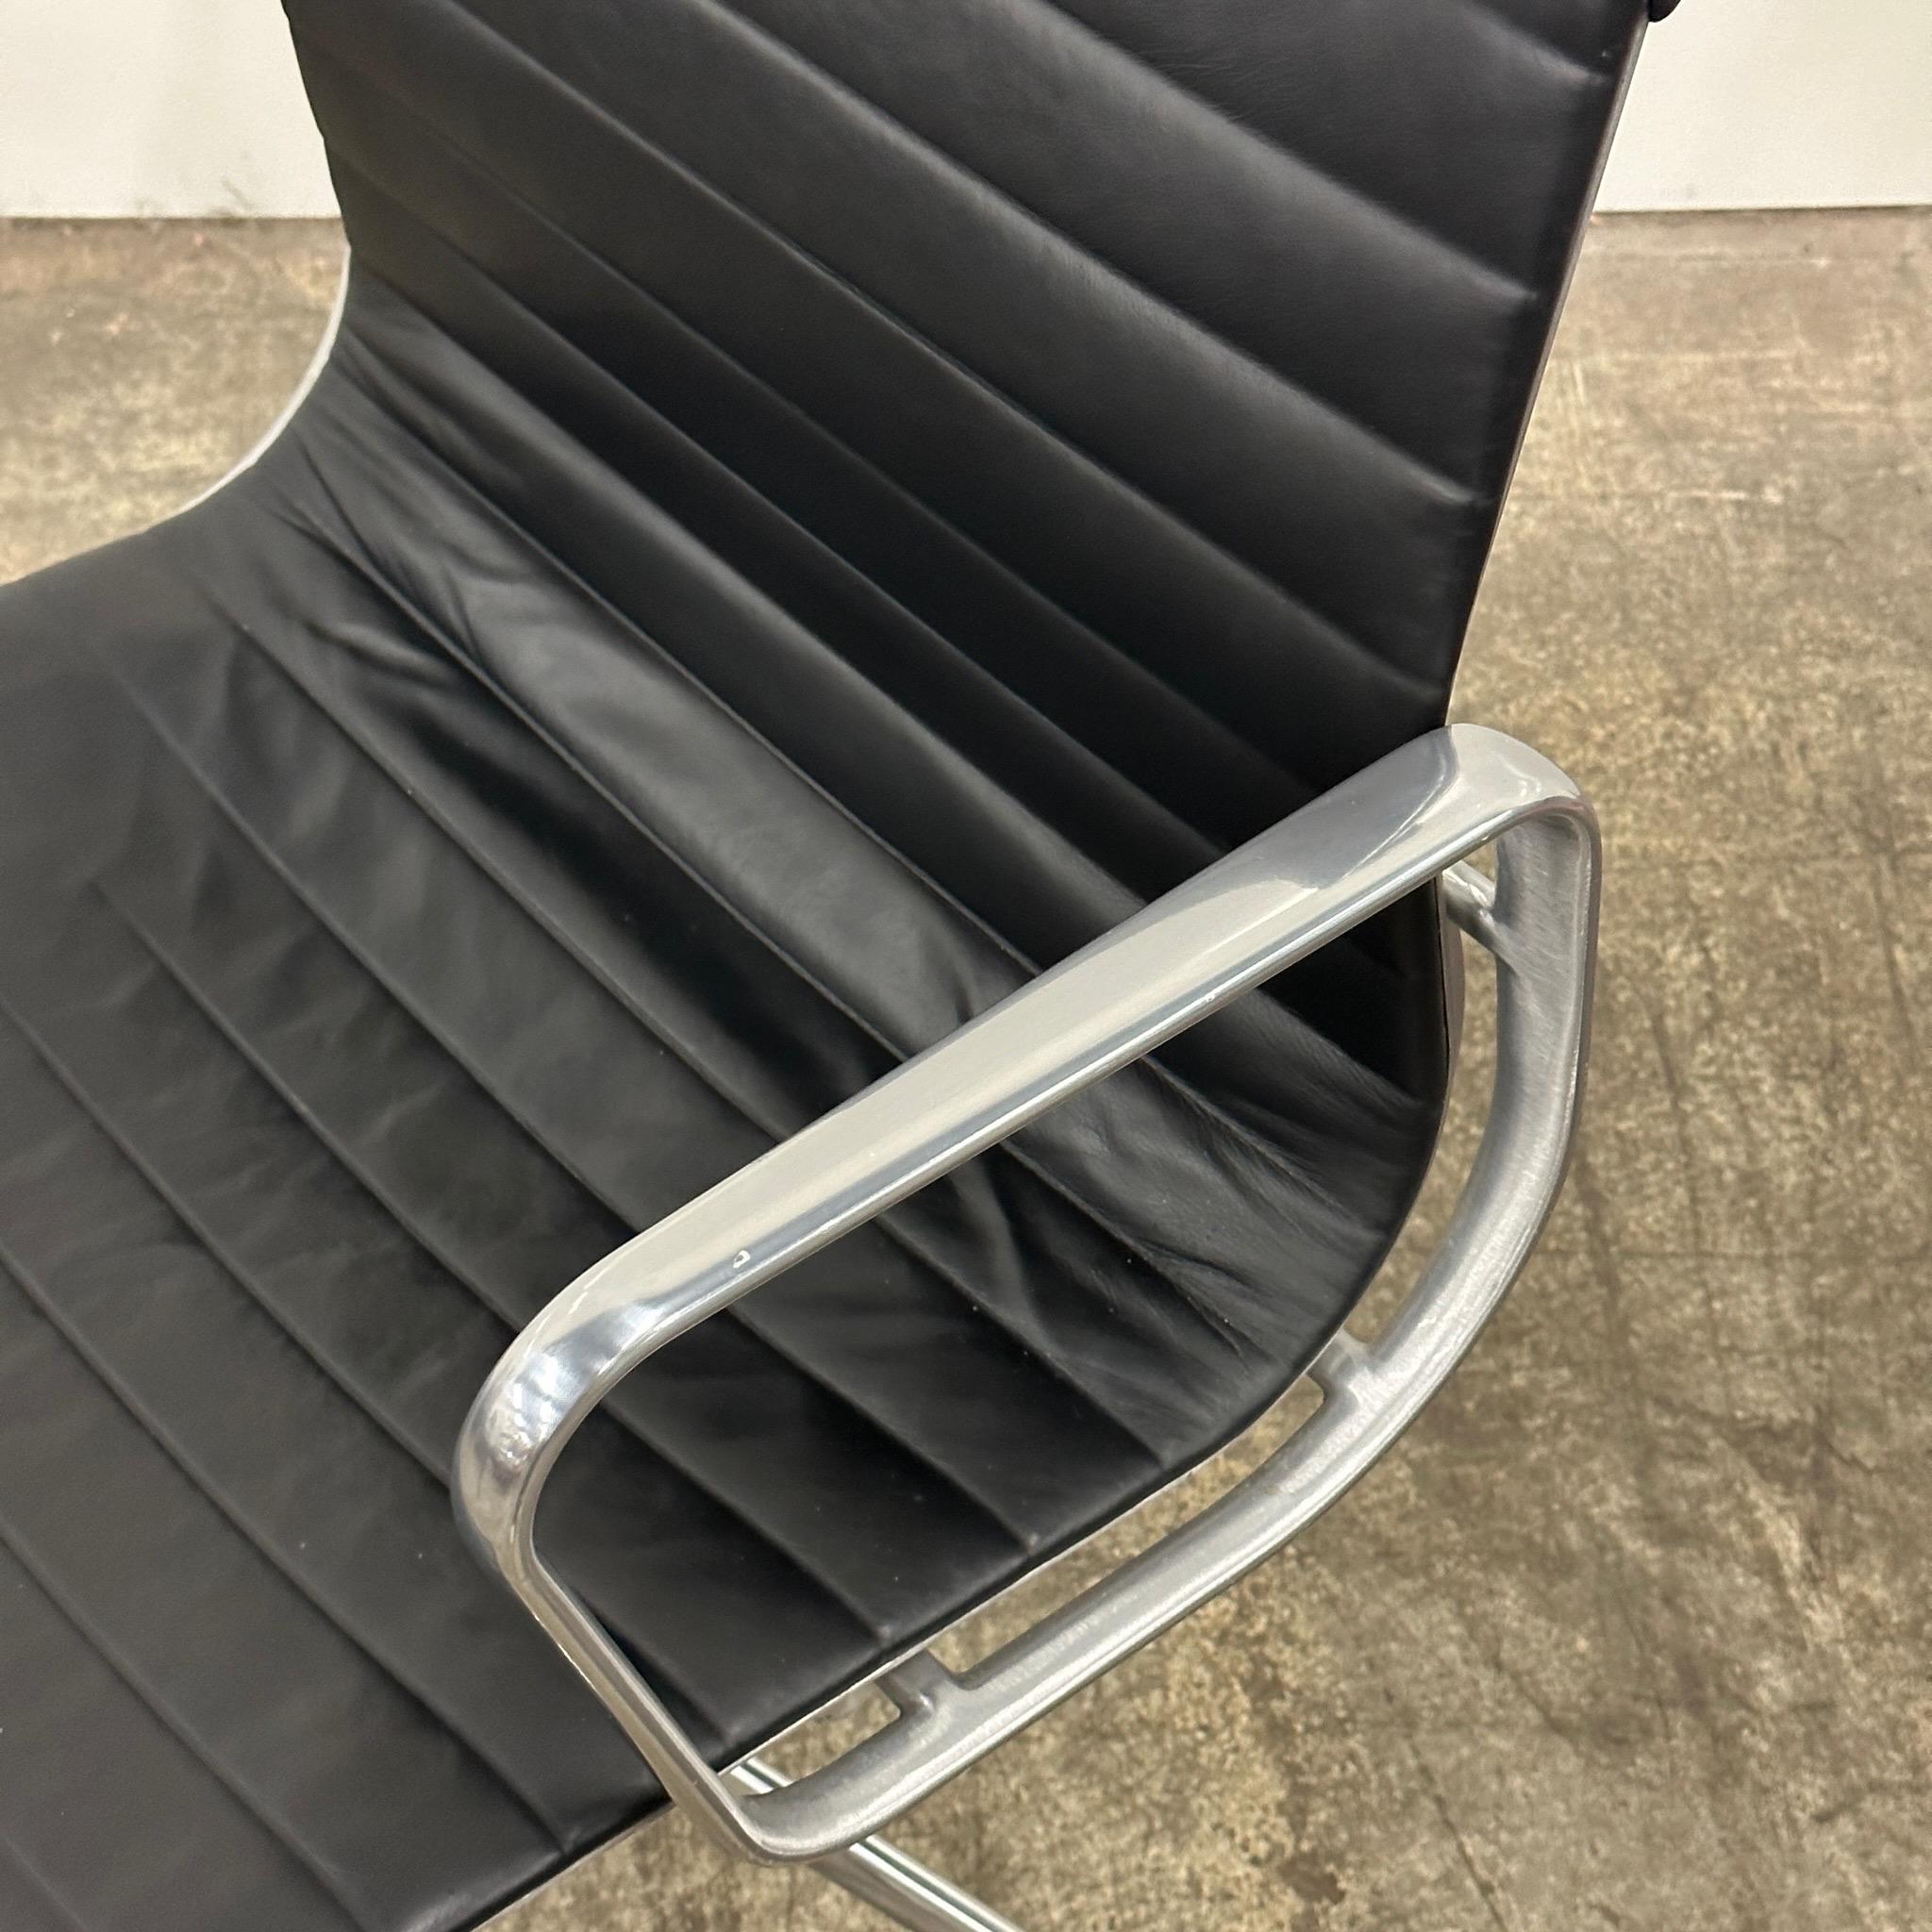 c. 2010s. Ledersitz mit Aluminiumsockel und Lenkrolle. Hinweis: Es fehlt ein Stück an der Unterseite, so dass sich der Stuhl beim Anheben von der Basis löst. Die Funktion wird nicht beeinträchtigt. 